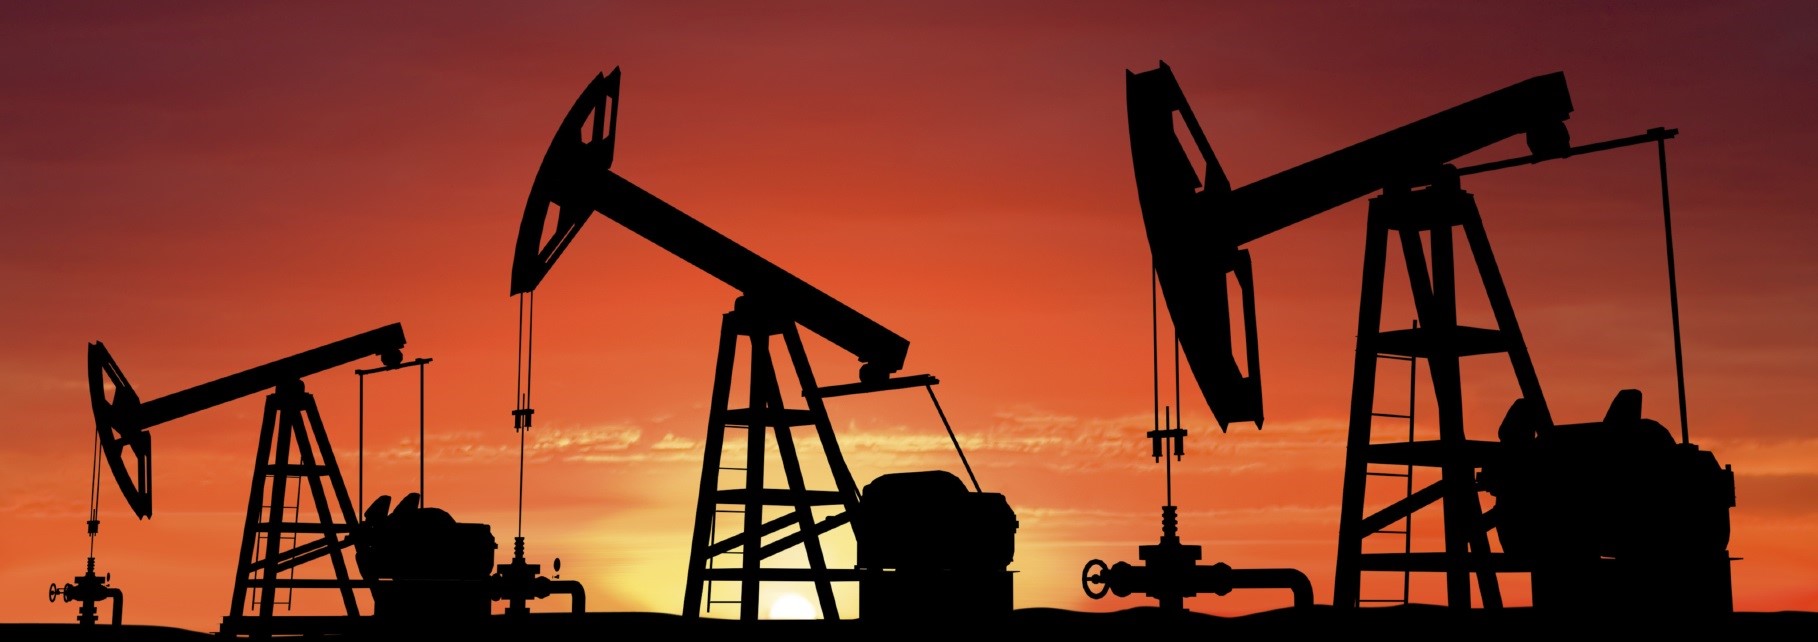 Petroleum Drilling